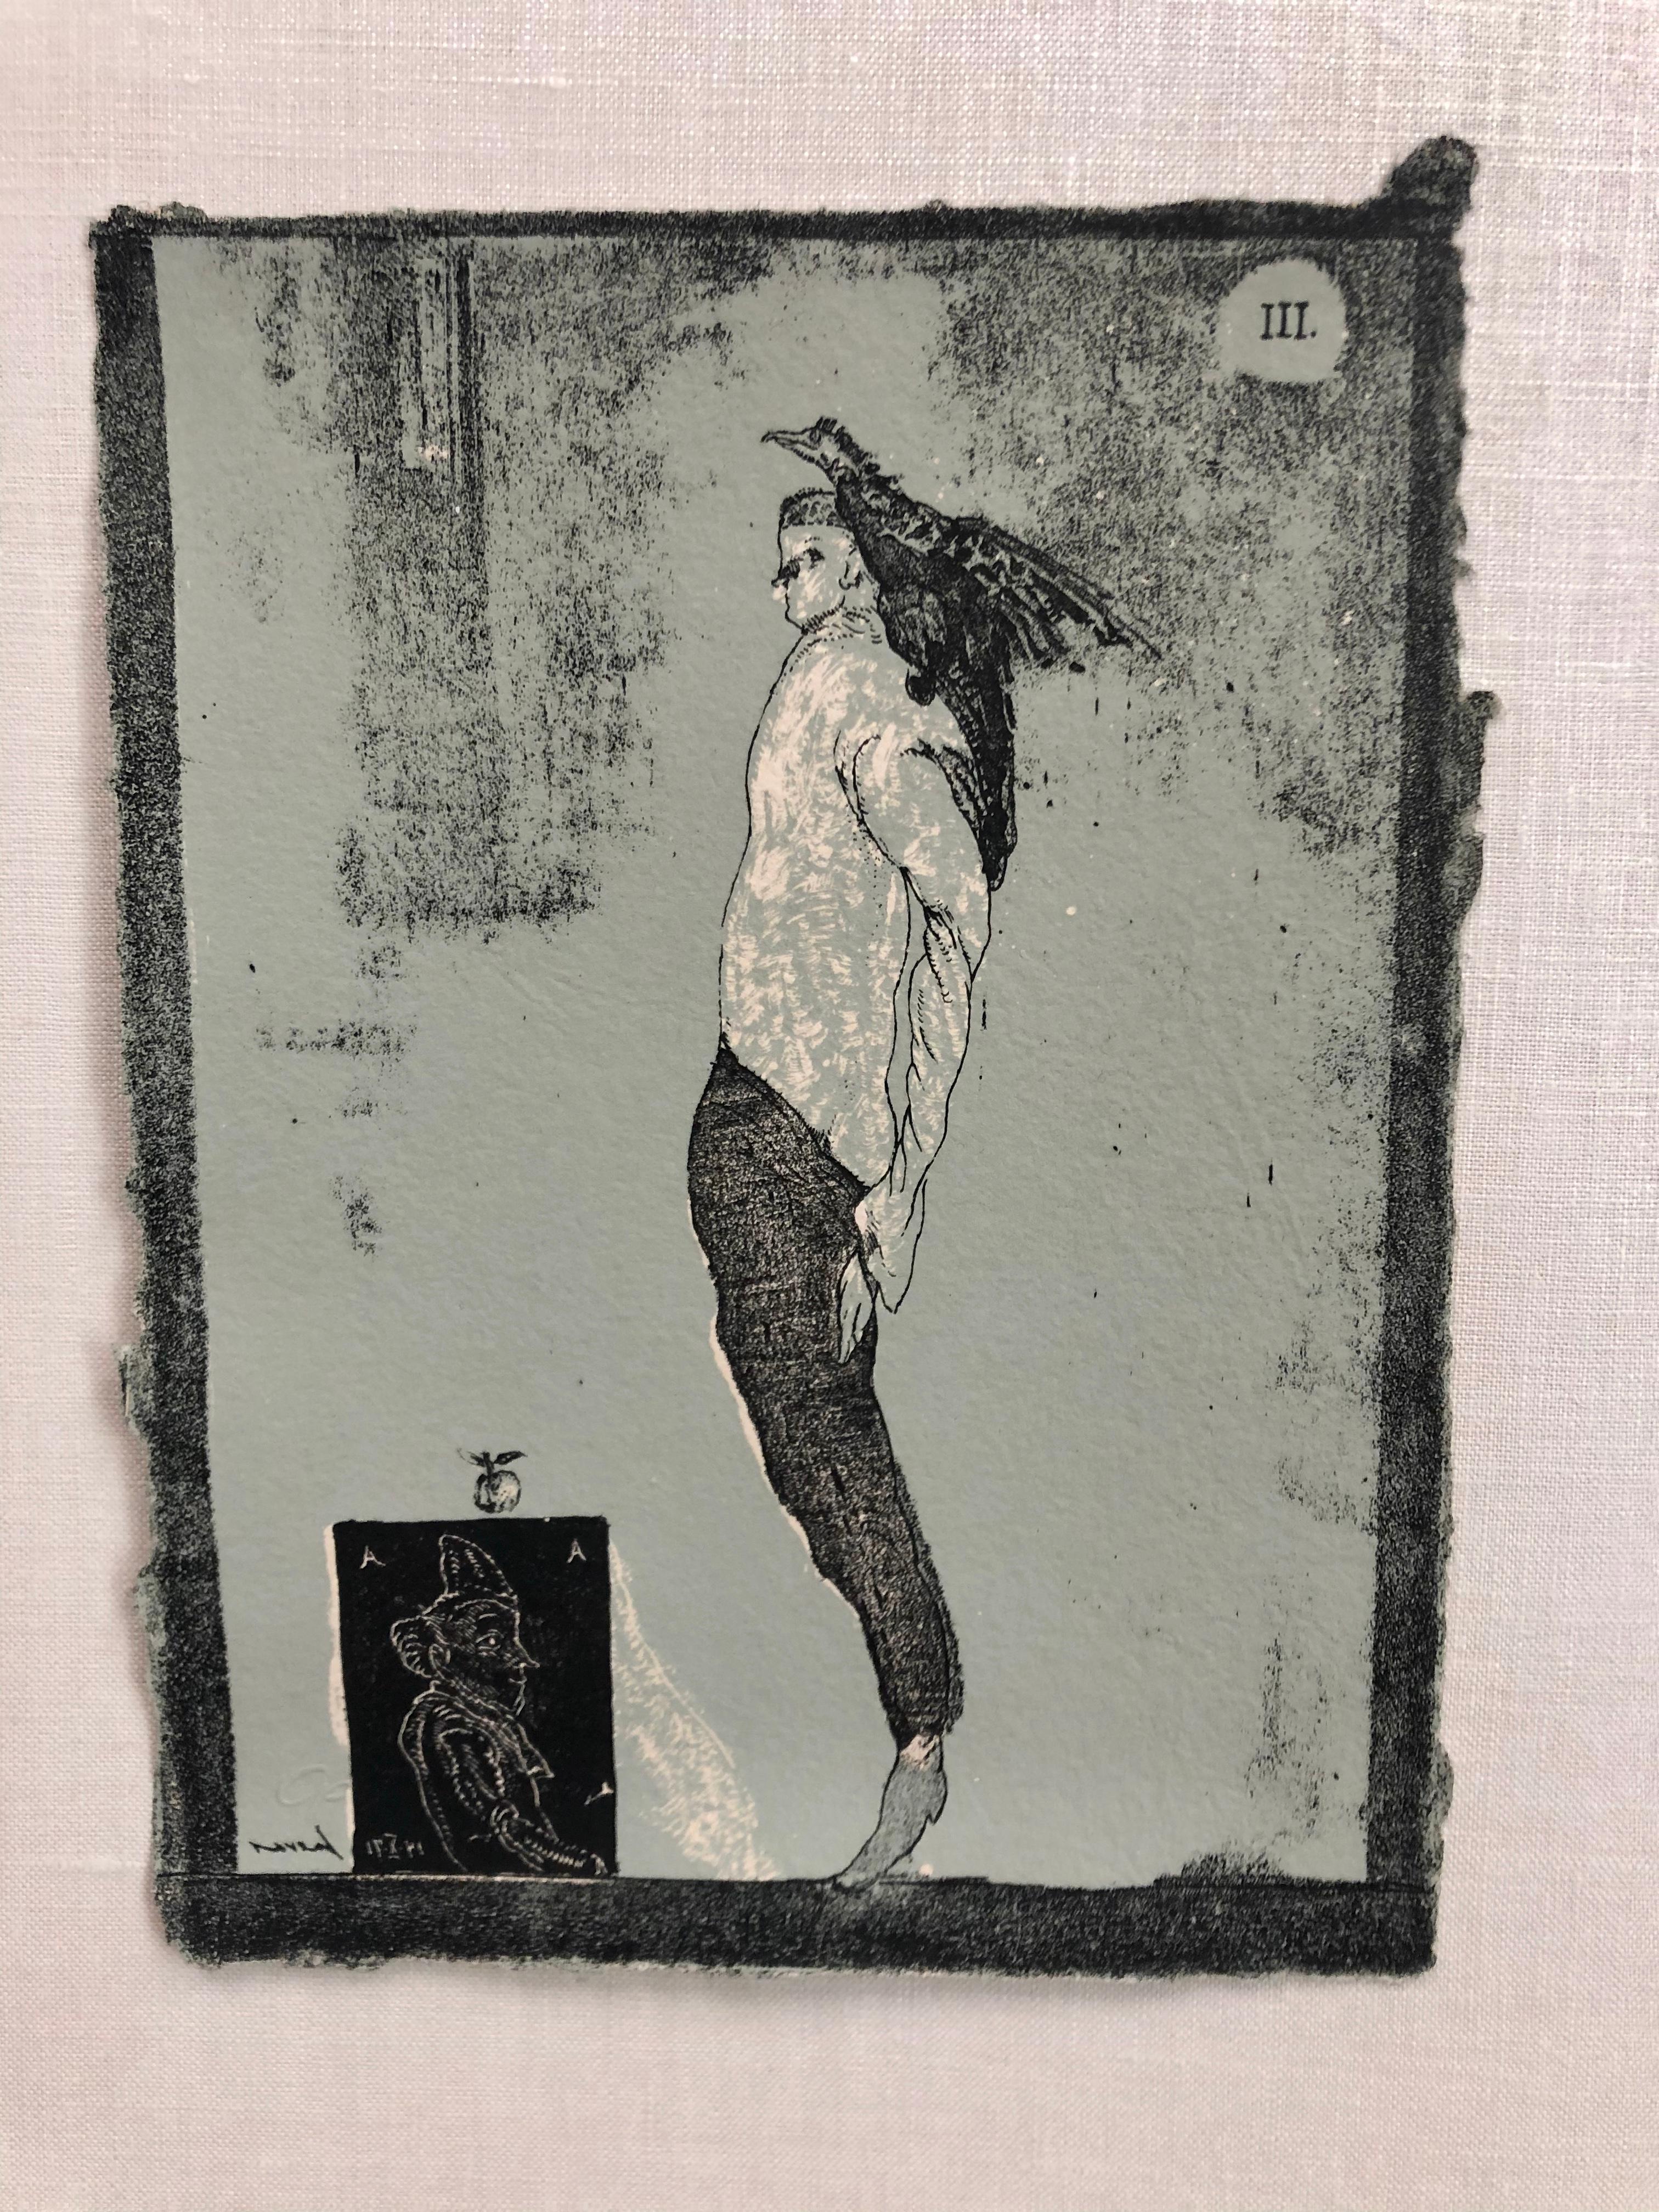 The Magicians Message From Cuevas' Comedies  - Gray Figurative Print by José Luis Cuevas